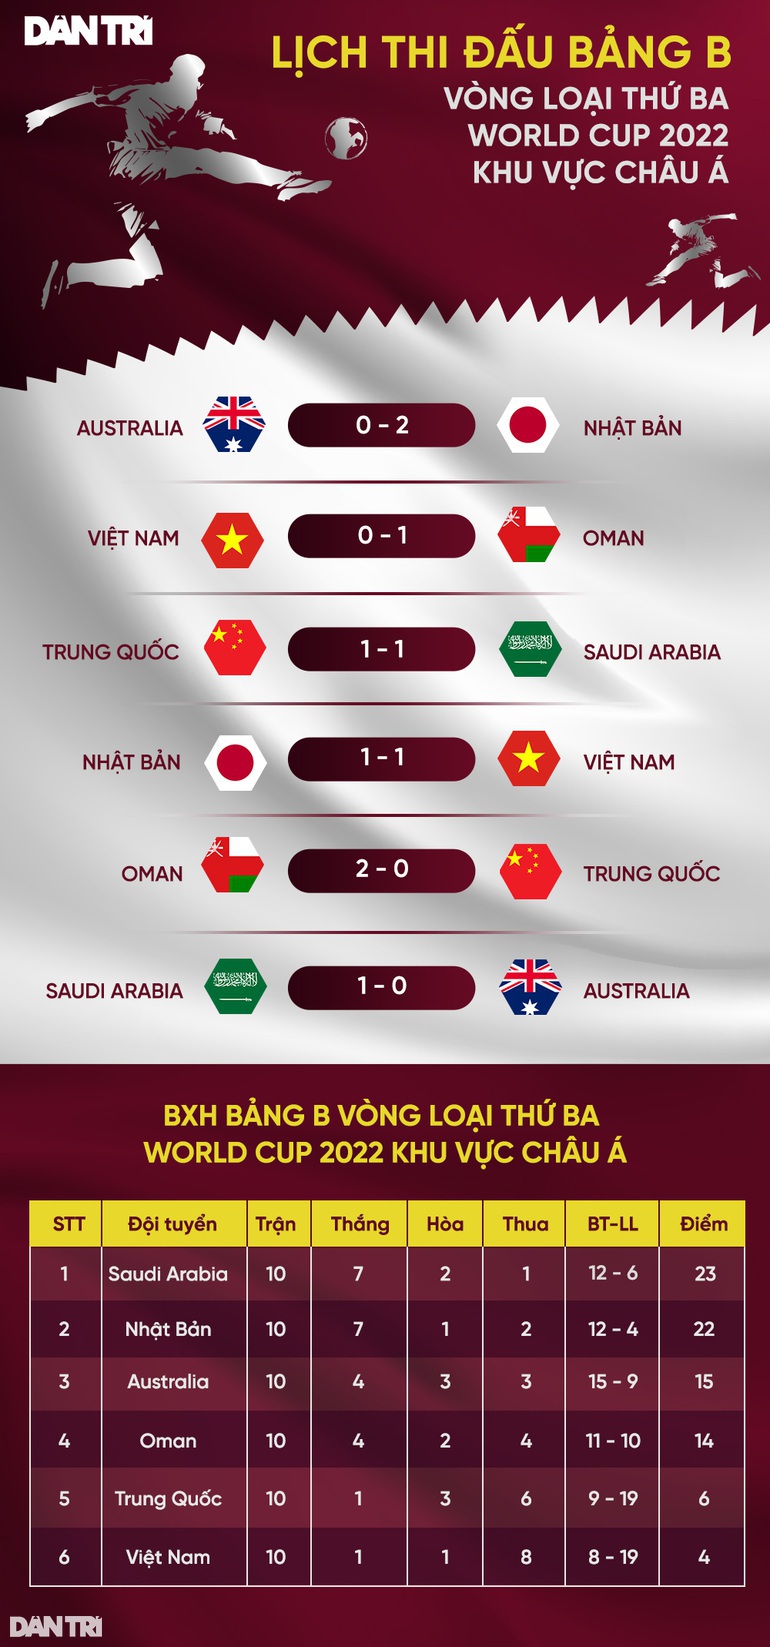 Báo Nhật Bản đánh giá bóng đá Việt Nam cao hơn so với Trung Quốc - 3